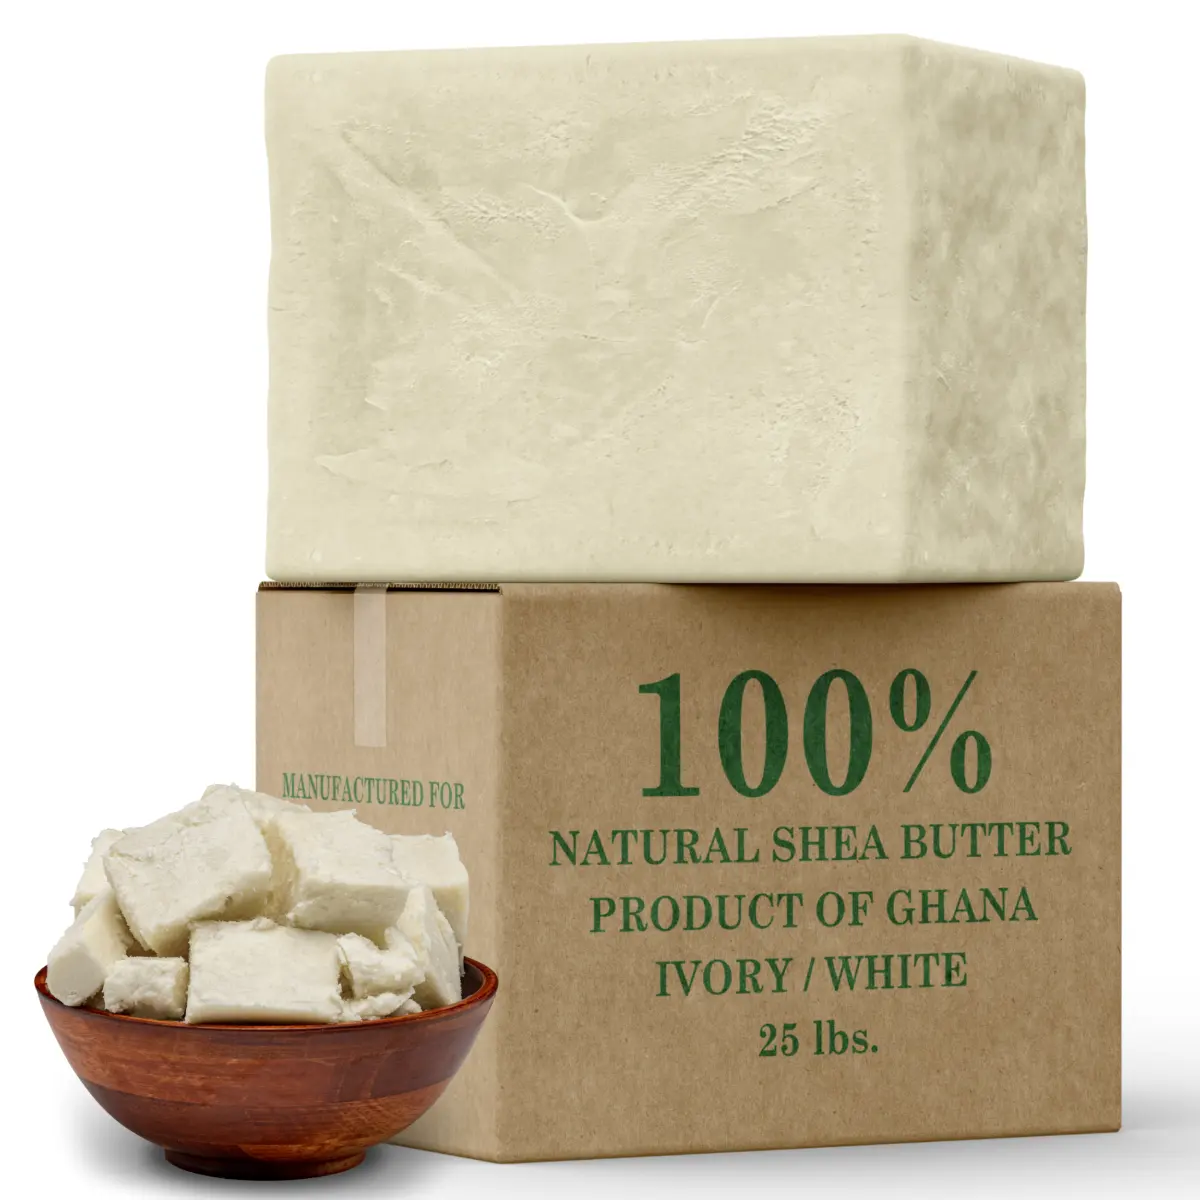 Лучший поставщик масла для тела Ghana Shea, оптовая продажа, 1 кг нерафинированного, цвета слоновой кости, Африканское чистое органическое масло ши, необработанное сырье для кожи, волос, лица